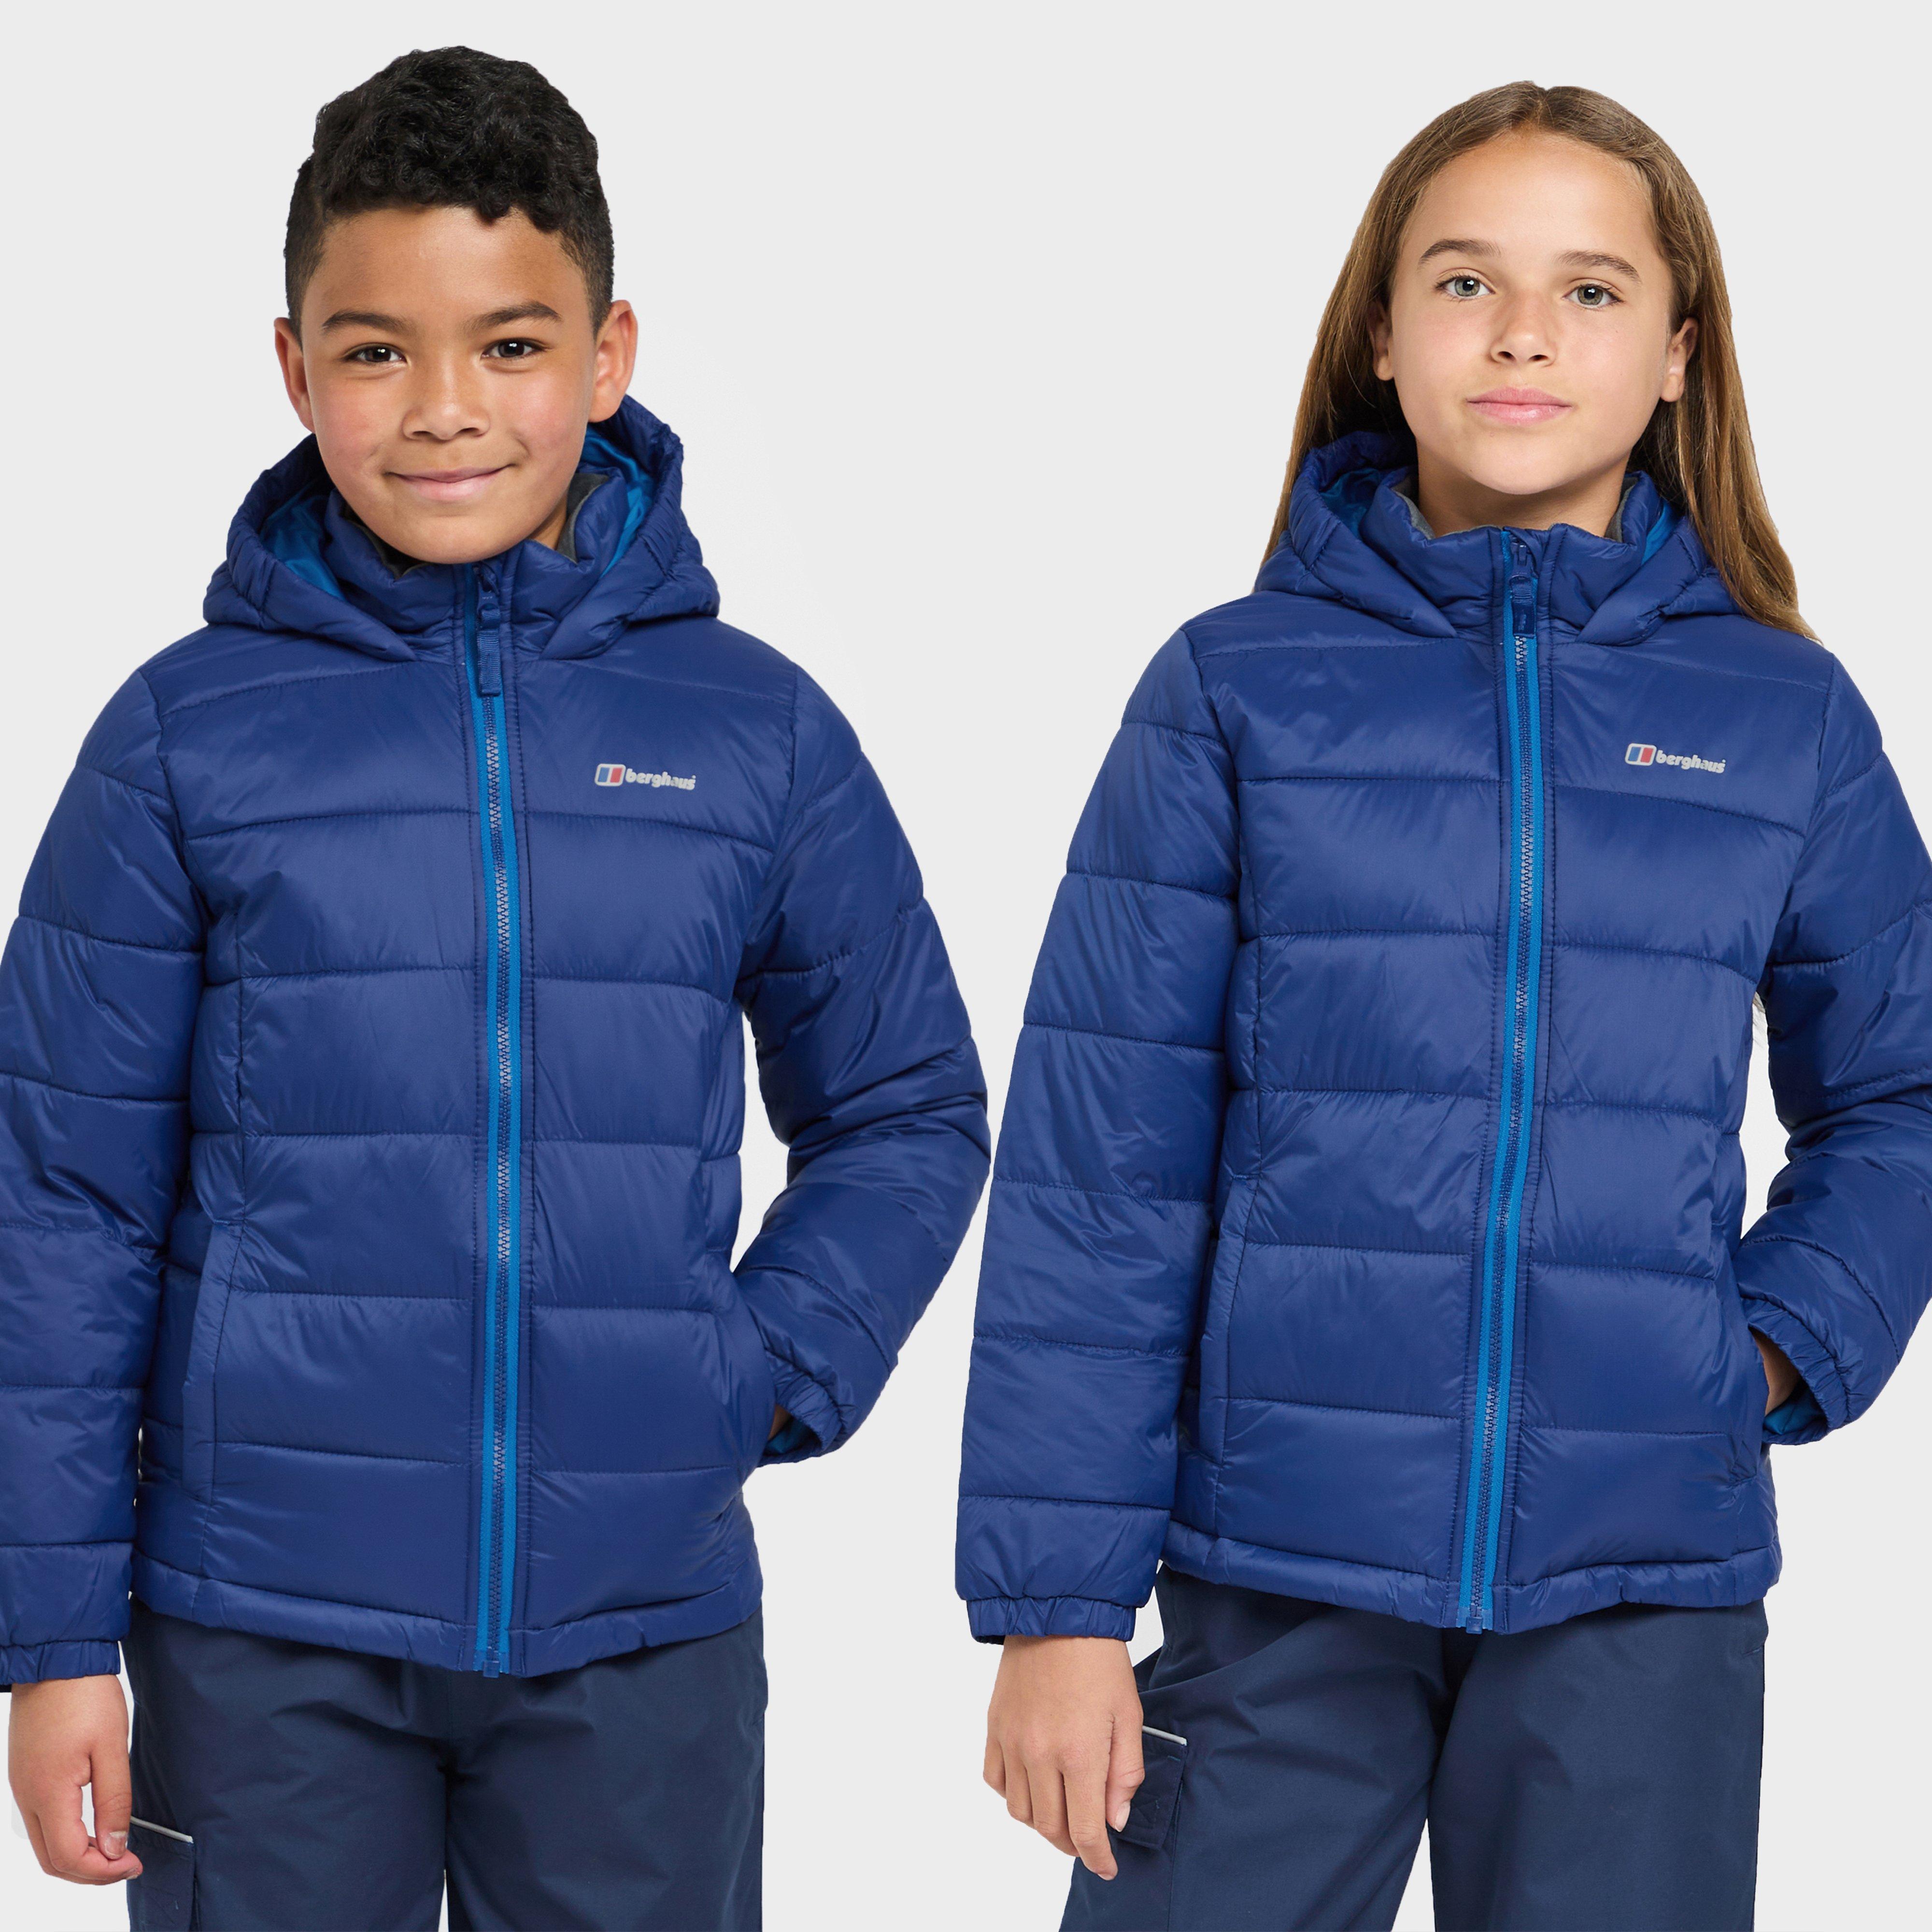 Berghaus Burham Kids Insulated Jacket - Blue/blue  Blue/blue